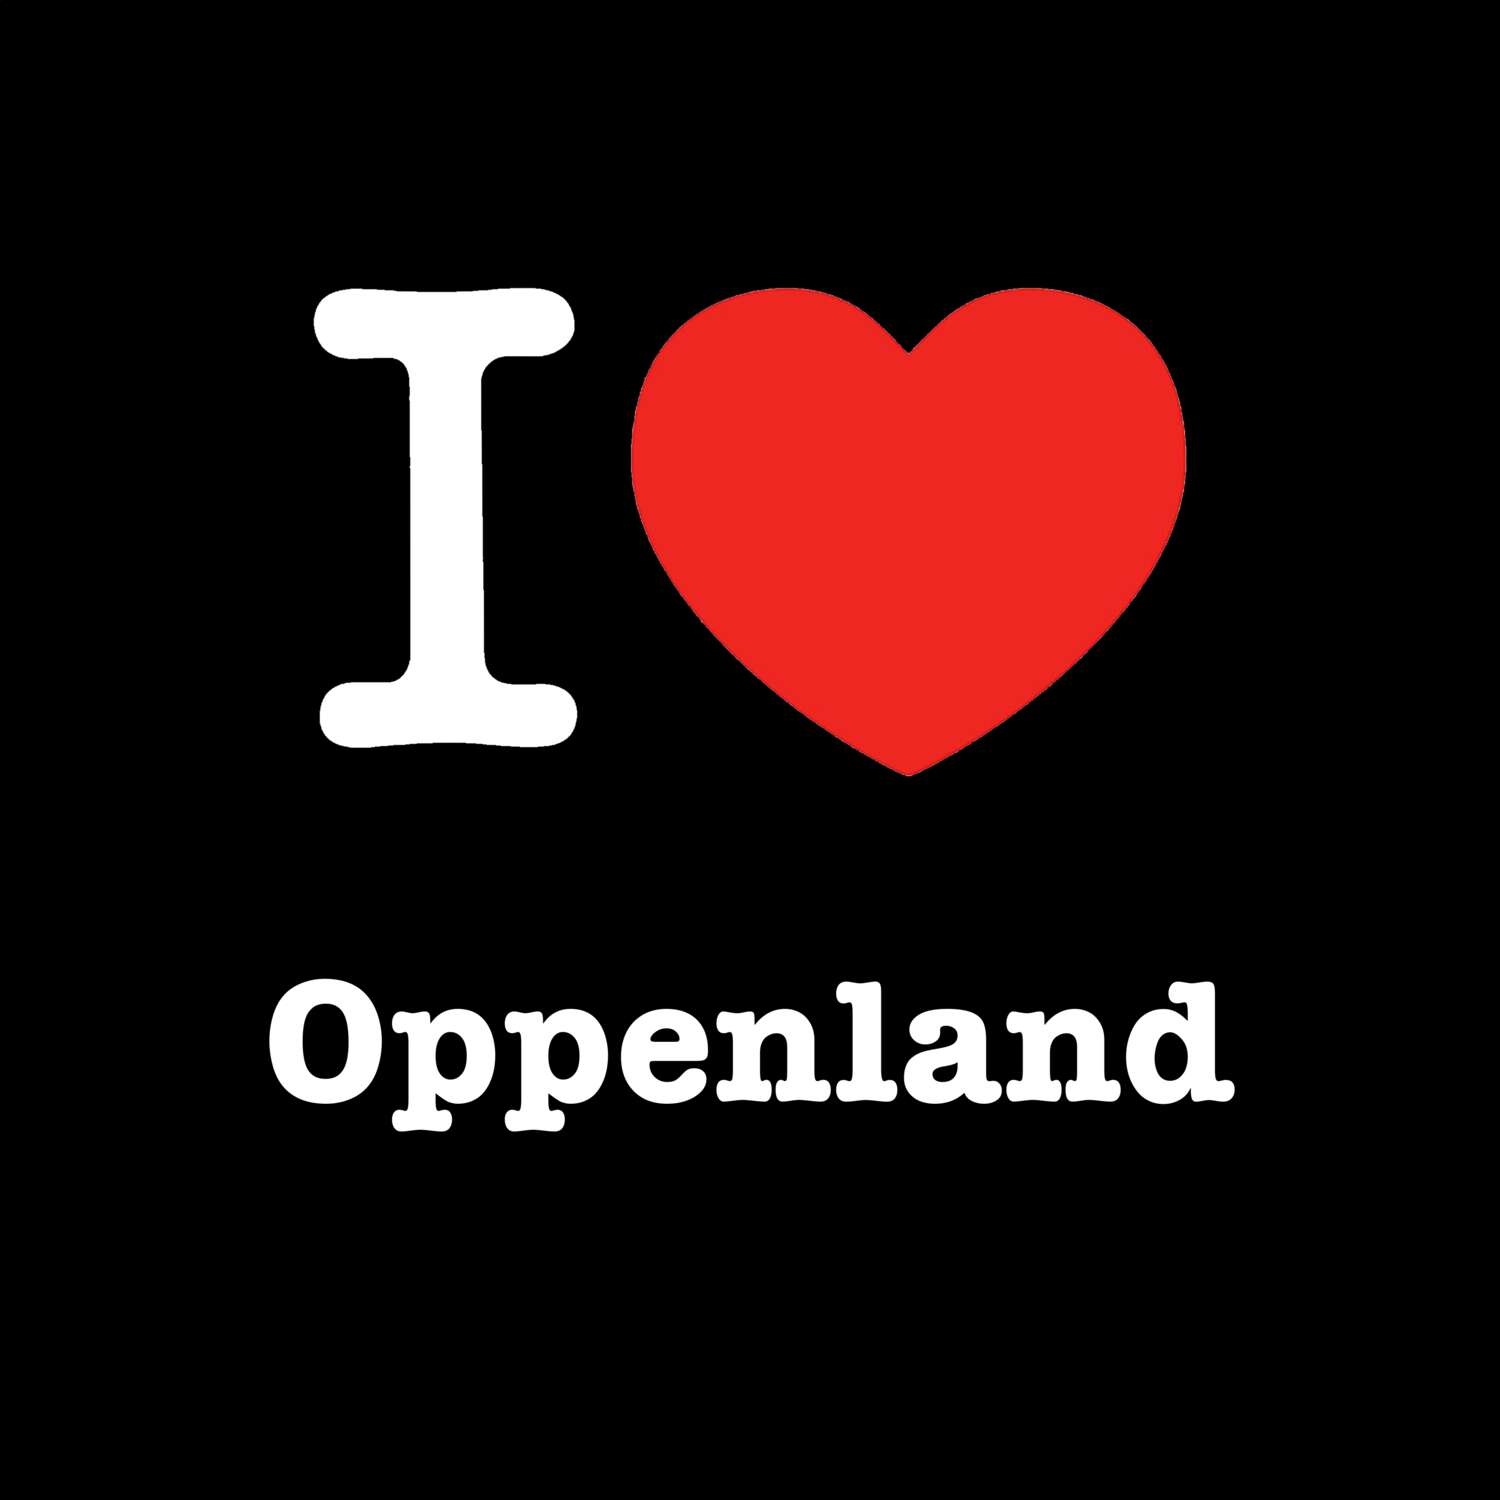 Oppenland T-Shirt »I love«